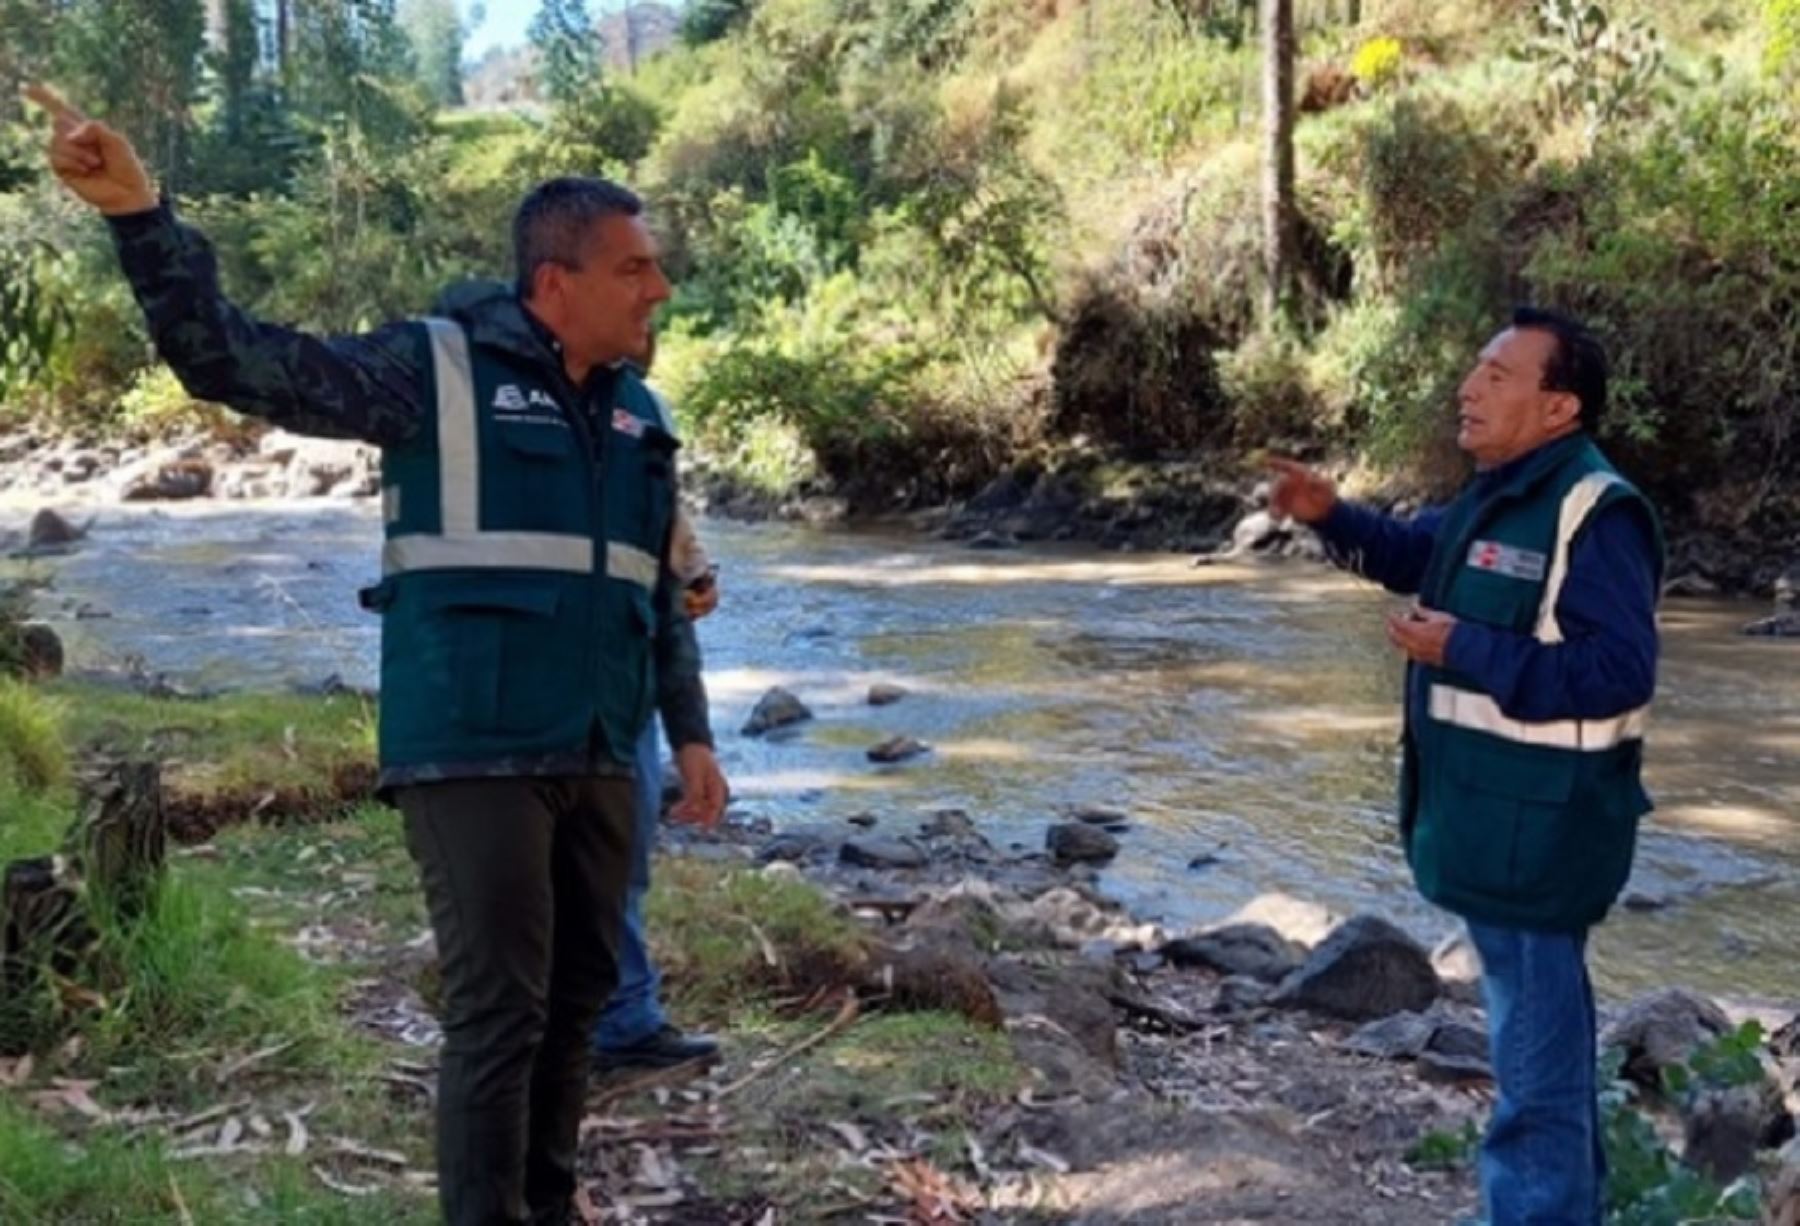 El Ministerio de Desarrollo Agrario y Riego, a través de la Autoridad Nacional del Agua, junto a otras instituciones del Estado, coordina las acciones frente al deslizamiento del cerro Cruz de Shallapa, en el distrito de Chavín de Huántar, provincia de Huari, ocurrido el pasado jueves 30 de junio.